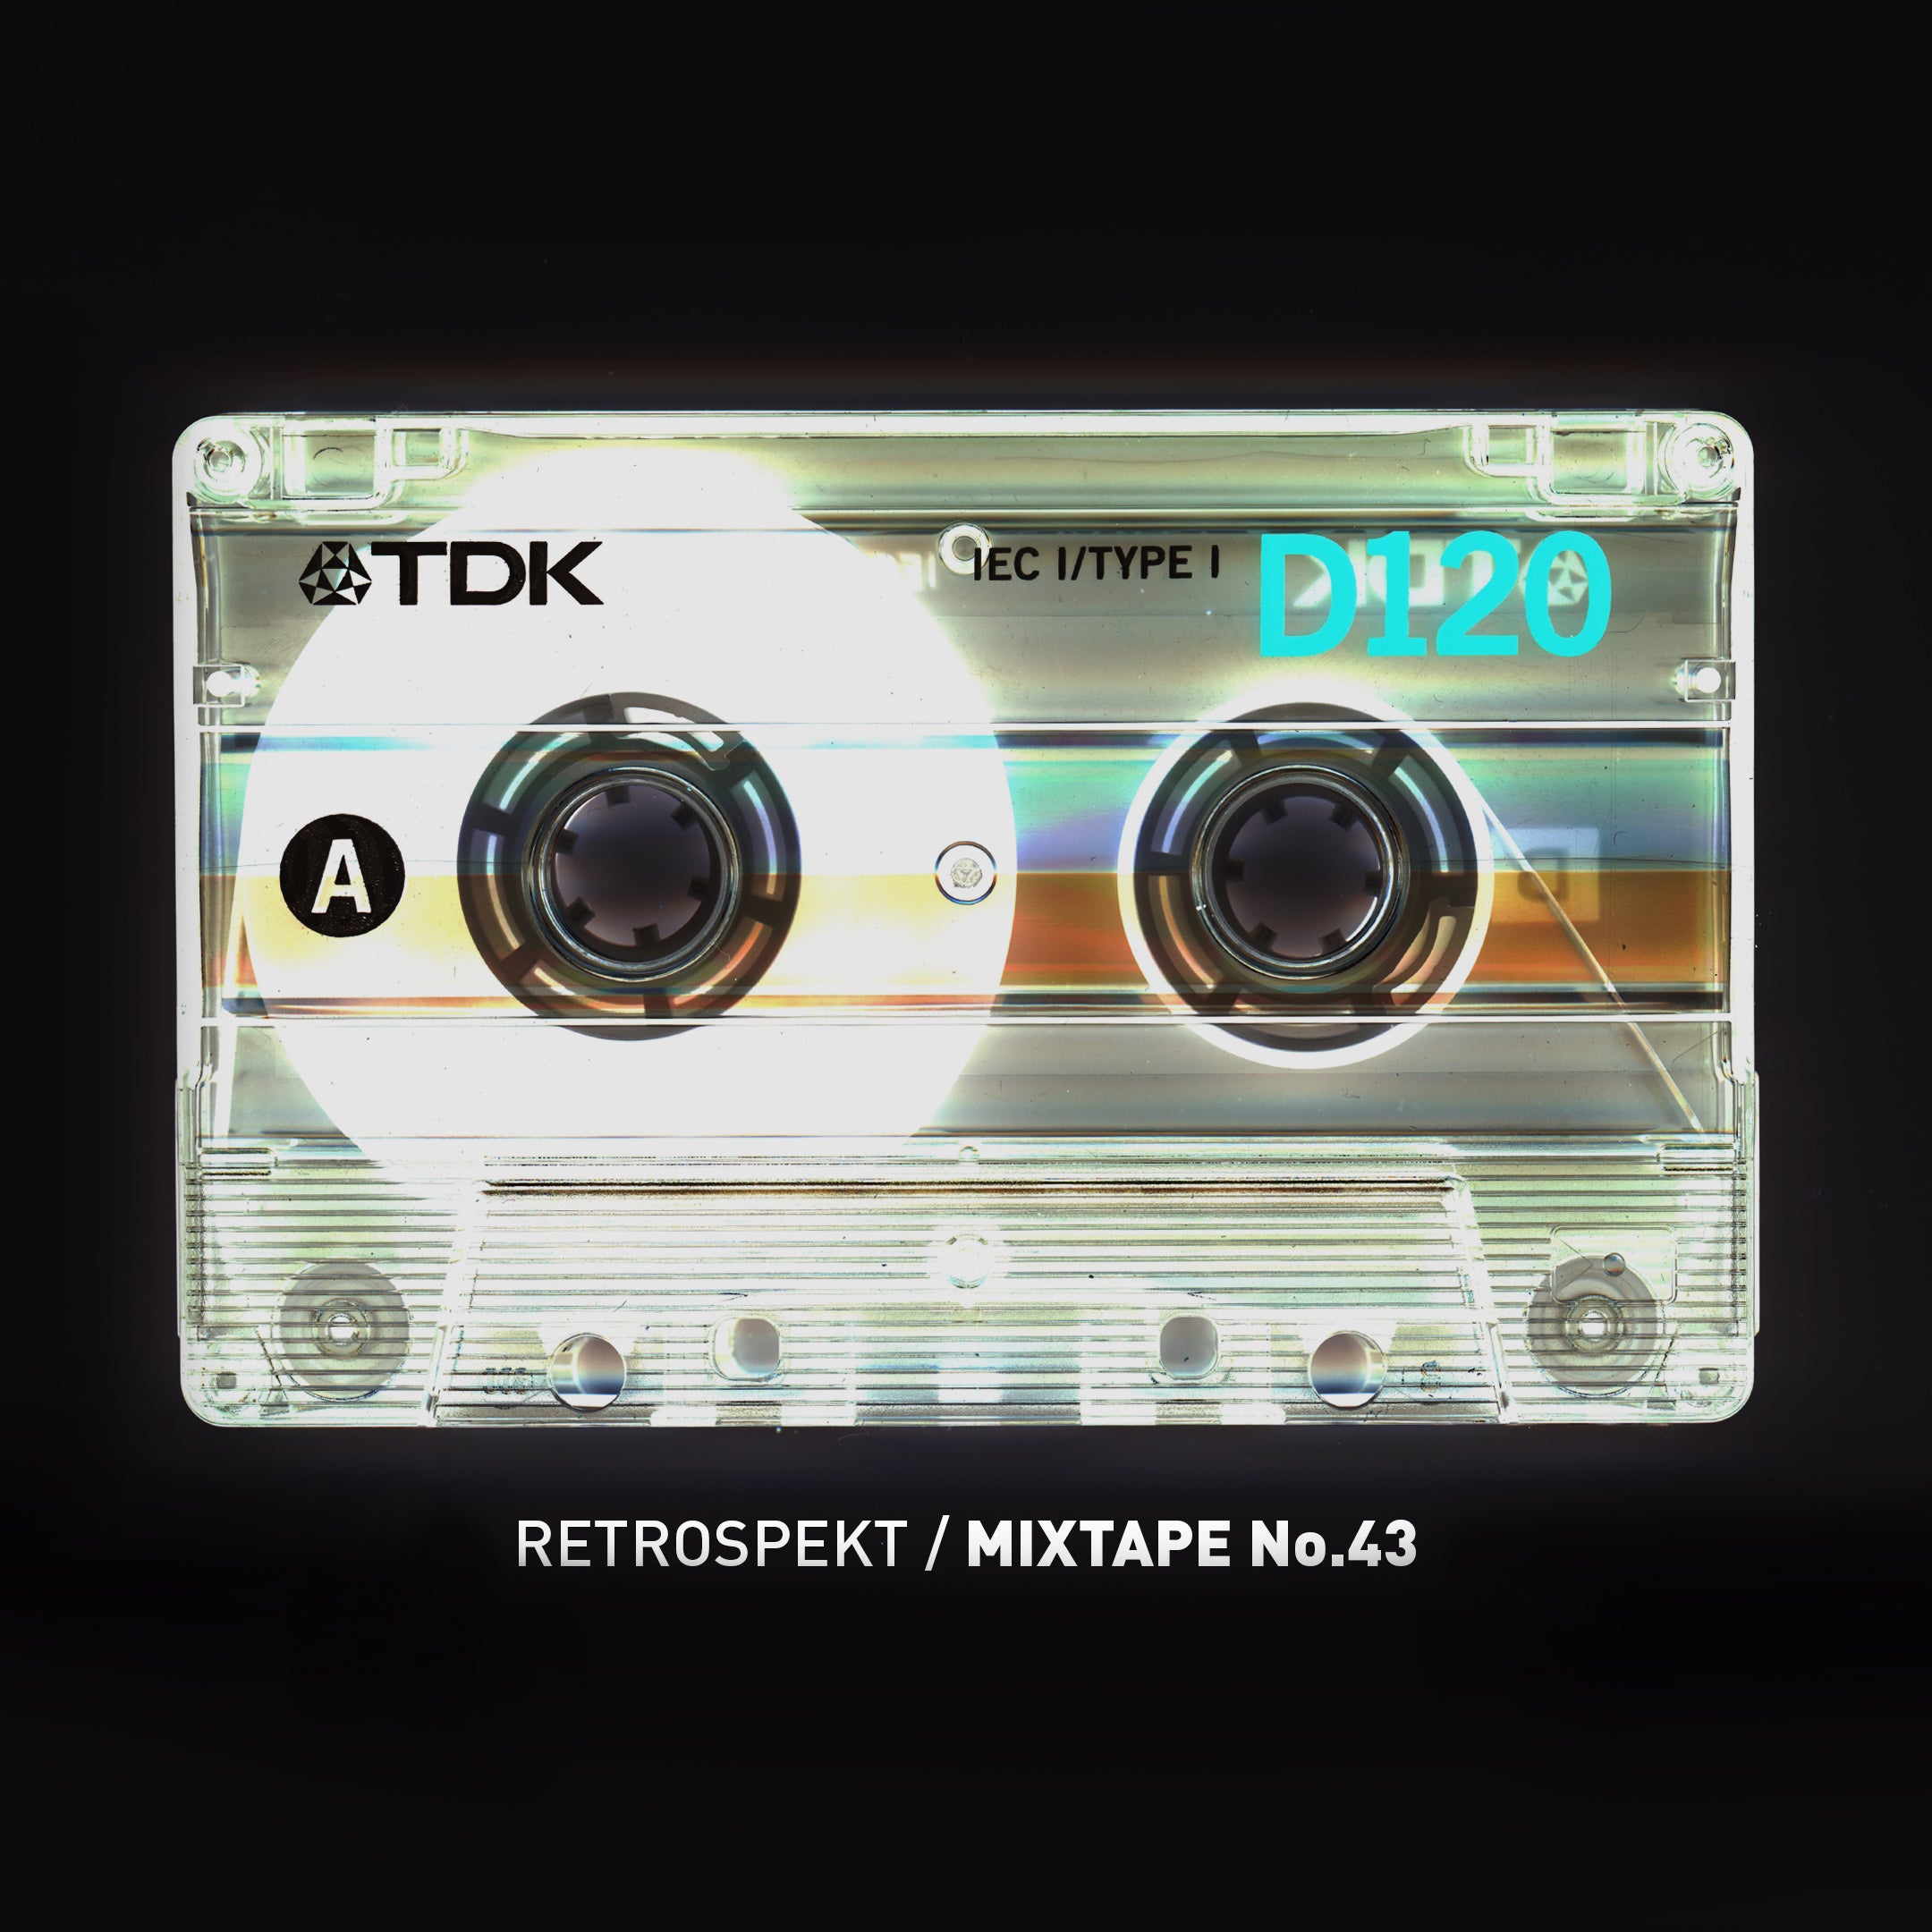 Mixtape 43